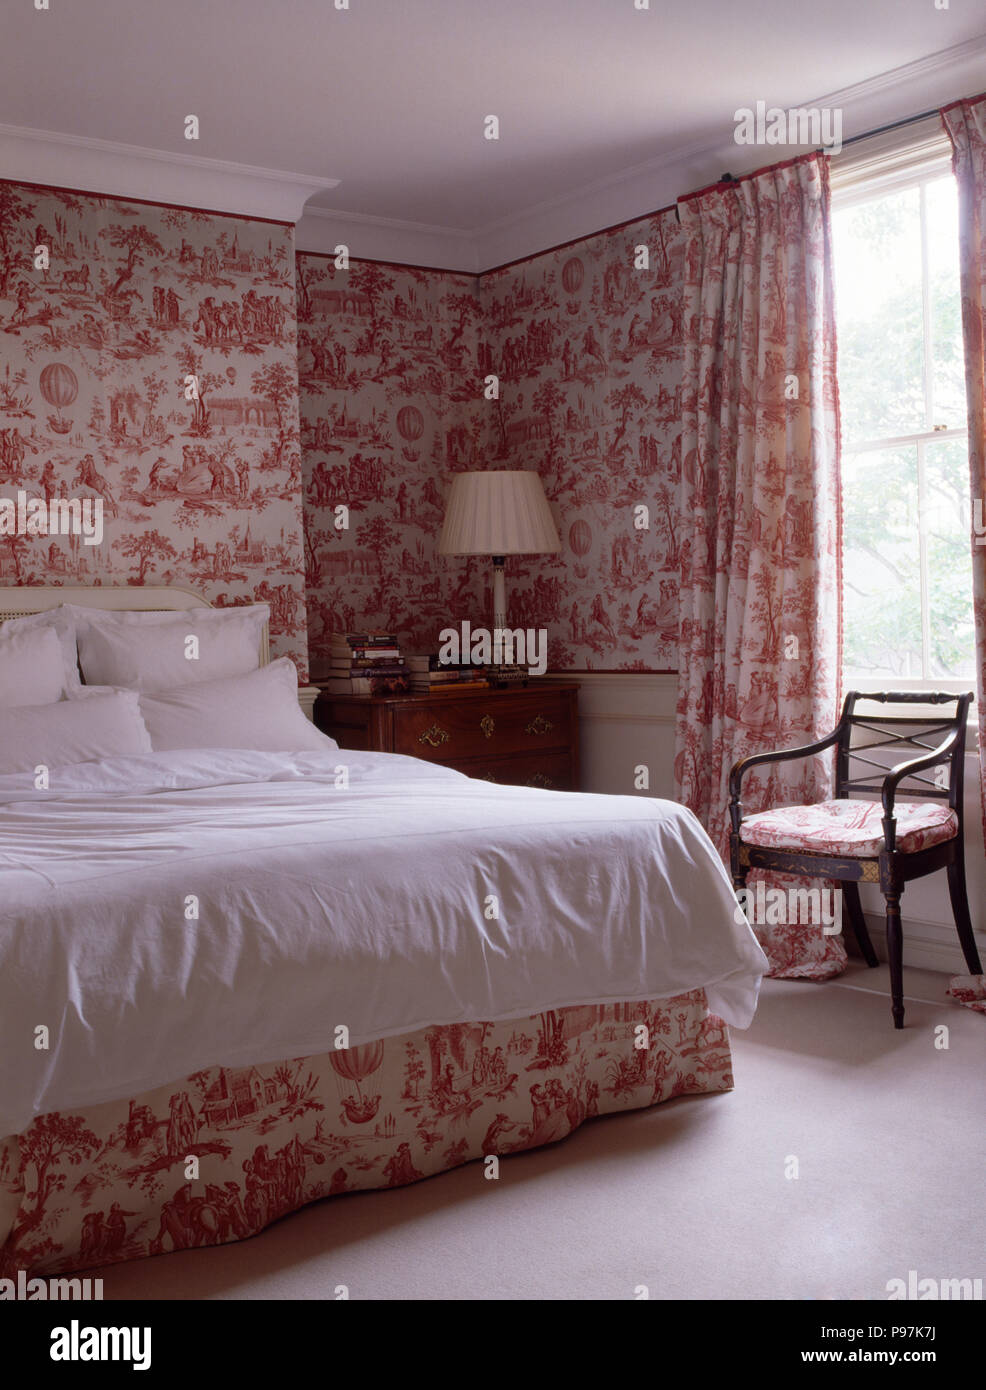 Toile de Jouy rose et des rideaux dans un pays avec des oreillers et blanc beroom couvre-lit sur le lit Banque D'Images